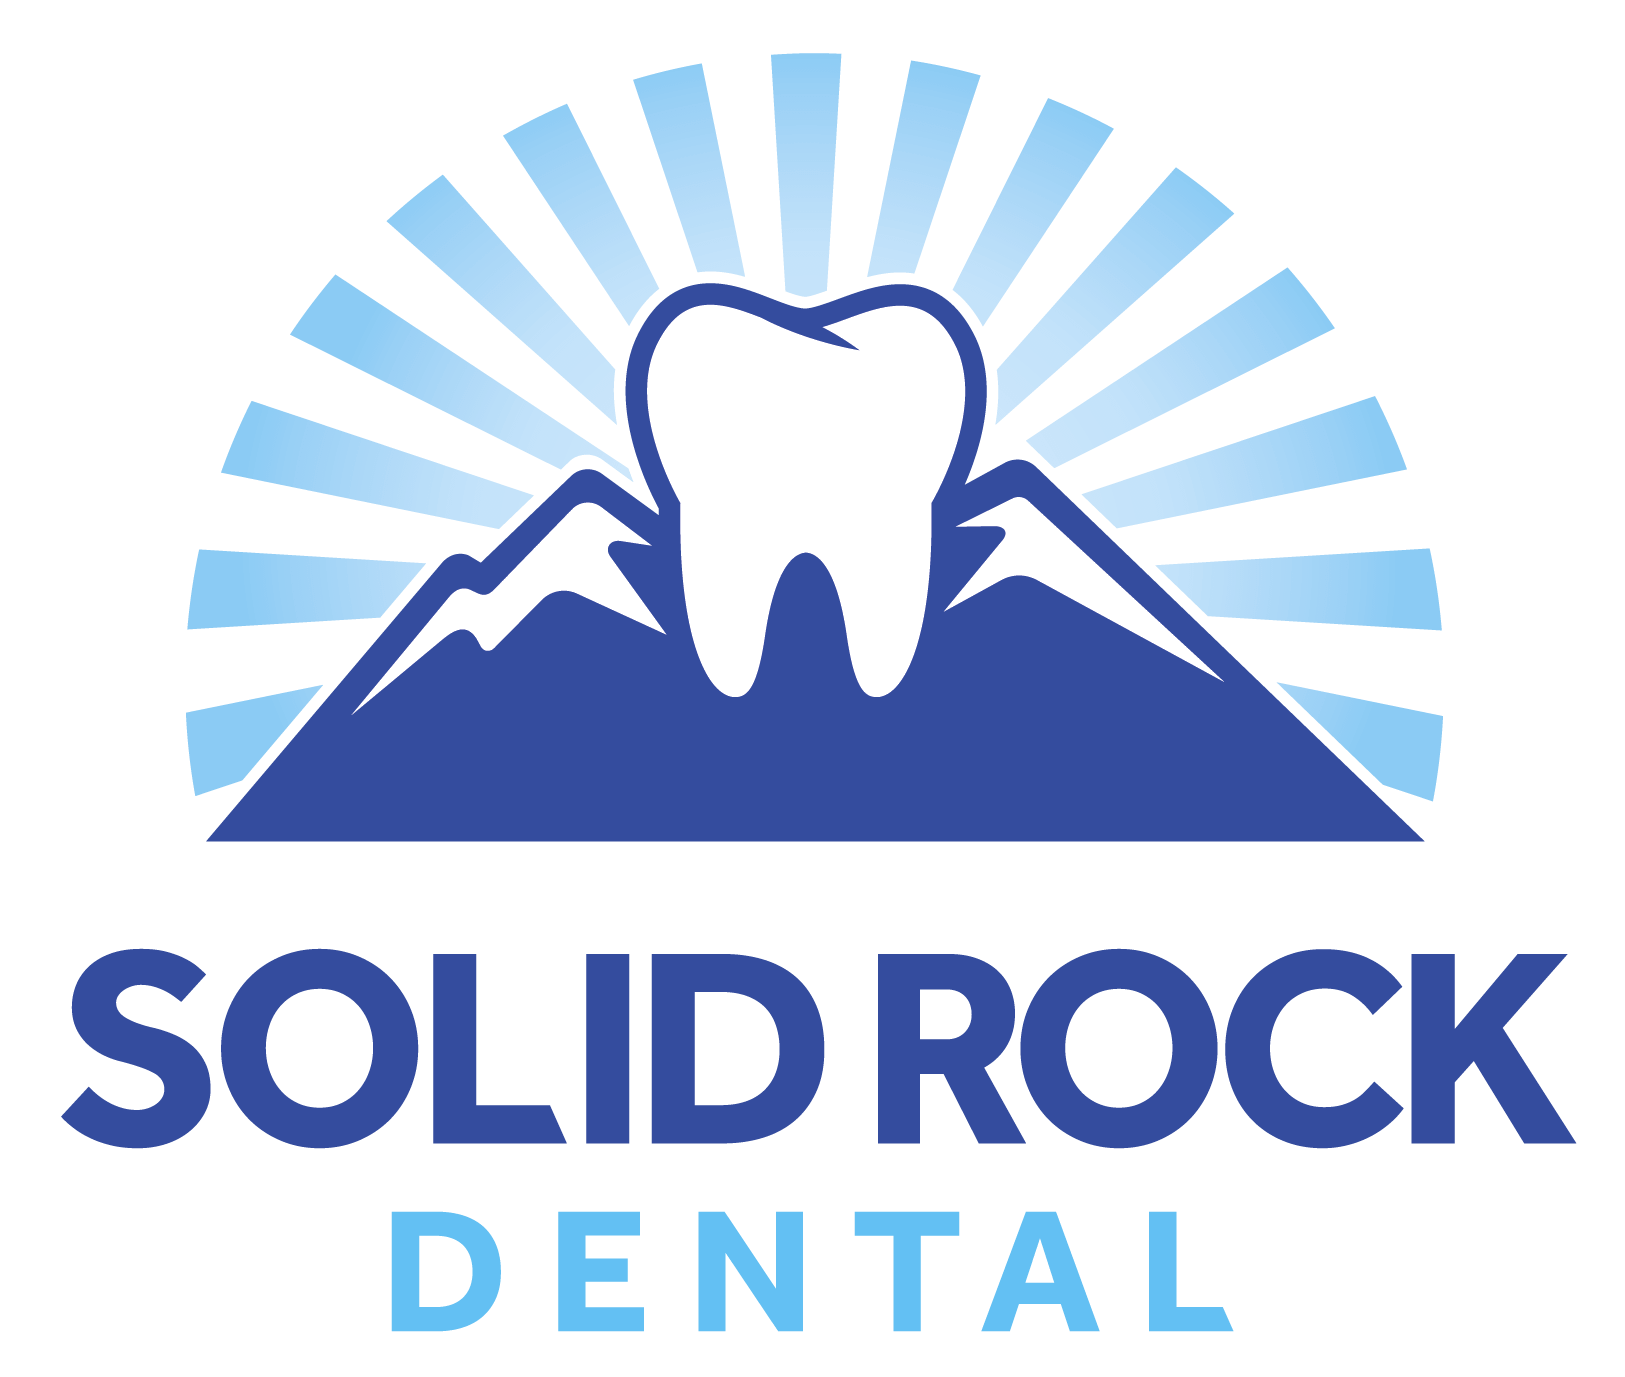 Solid Rock Dental